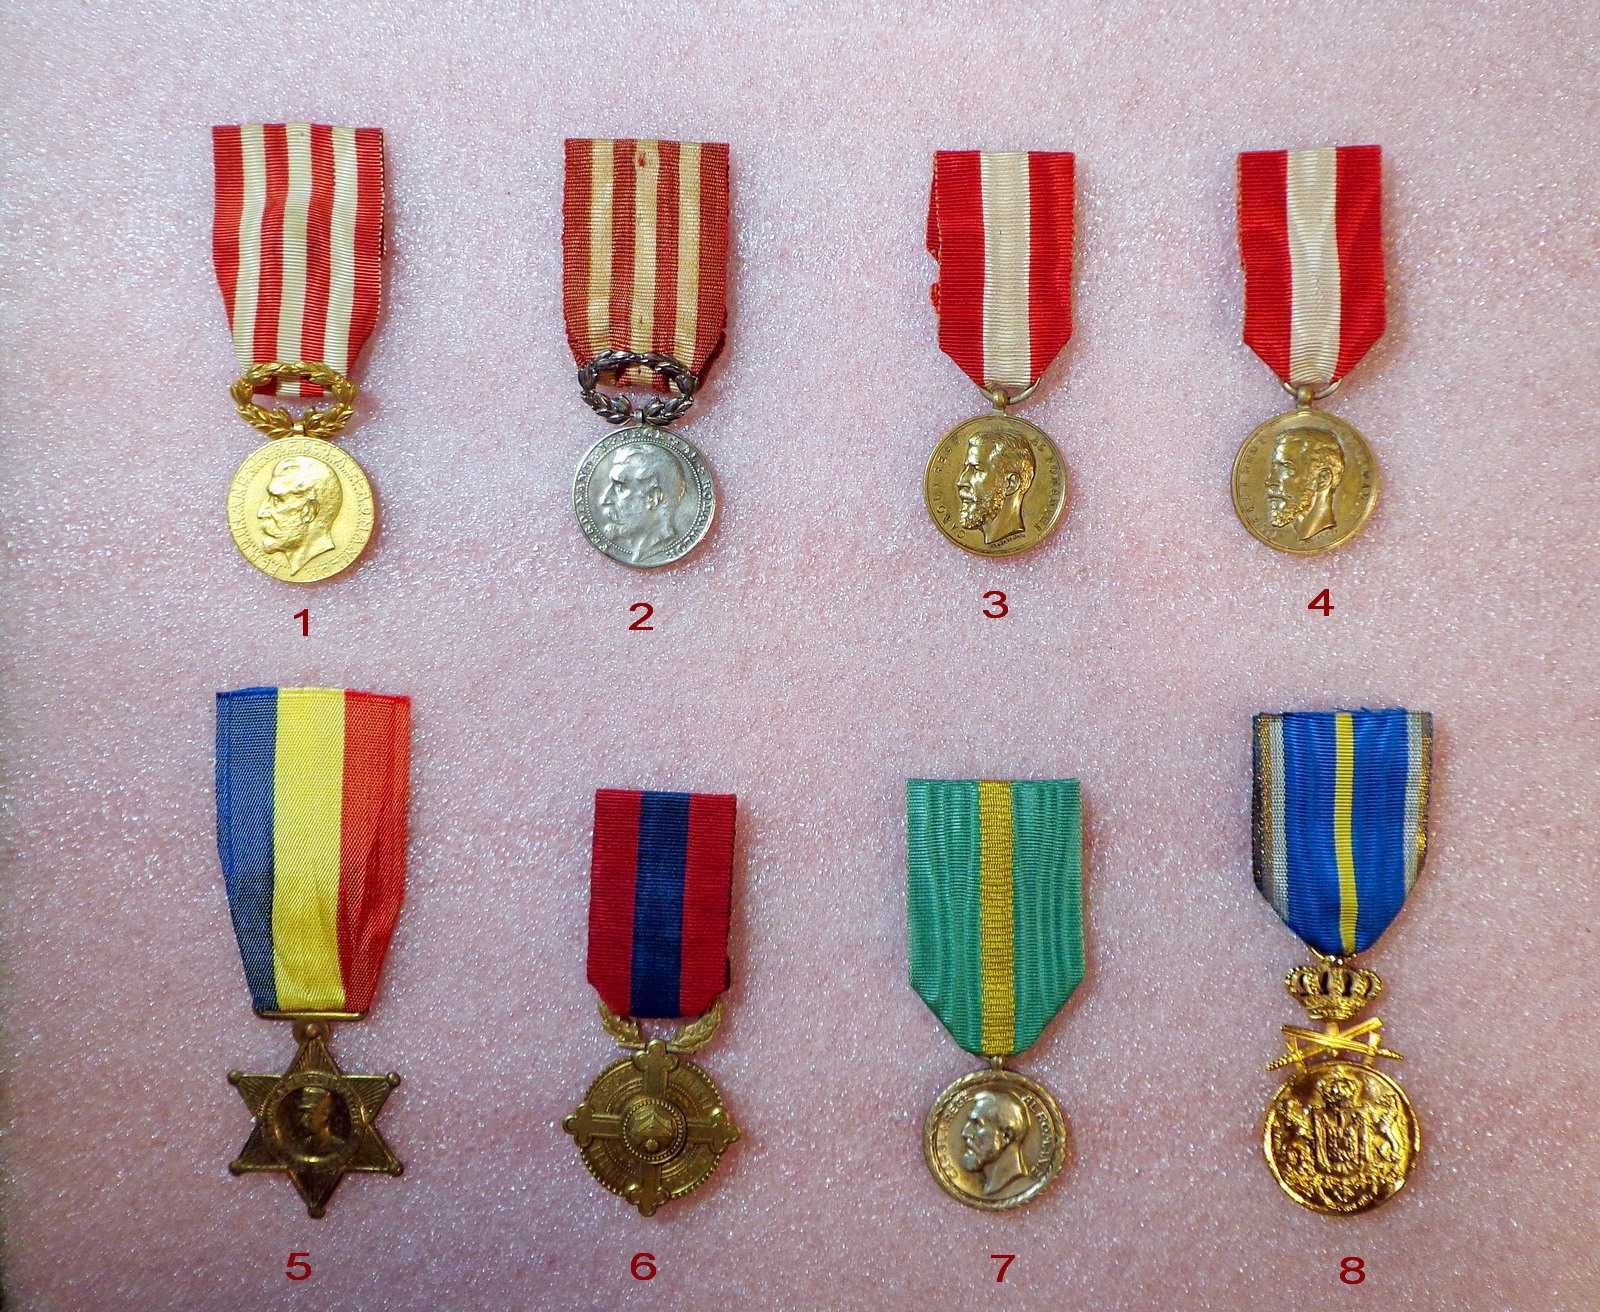 DECORATII-Ordine-Medalii-Cruci-REGALISTE-Rege Carol-Ferdinand-Mihai I